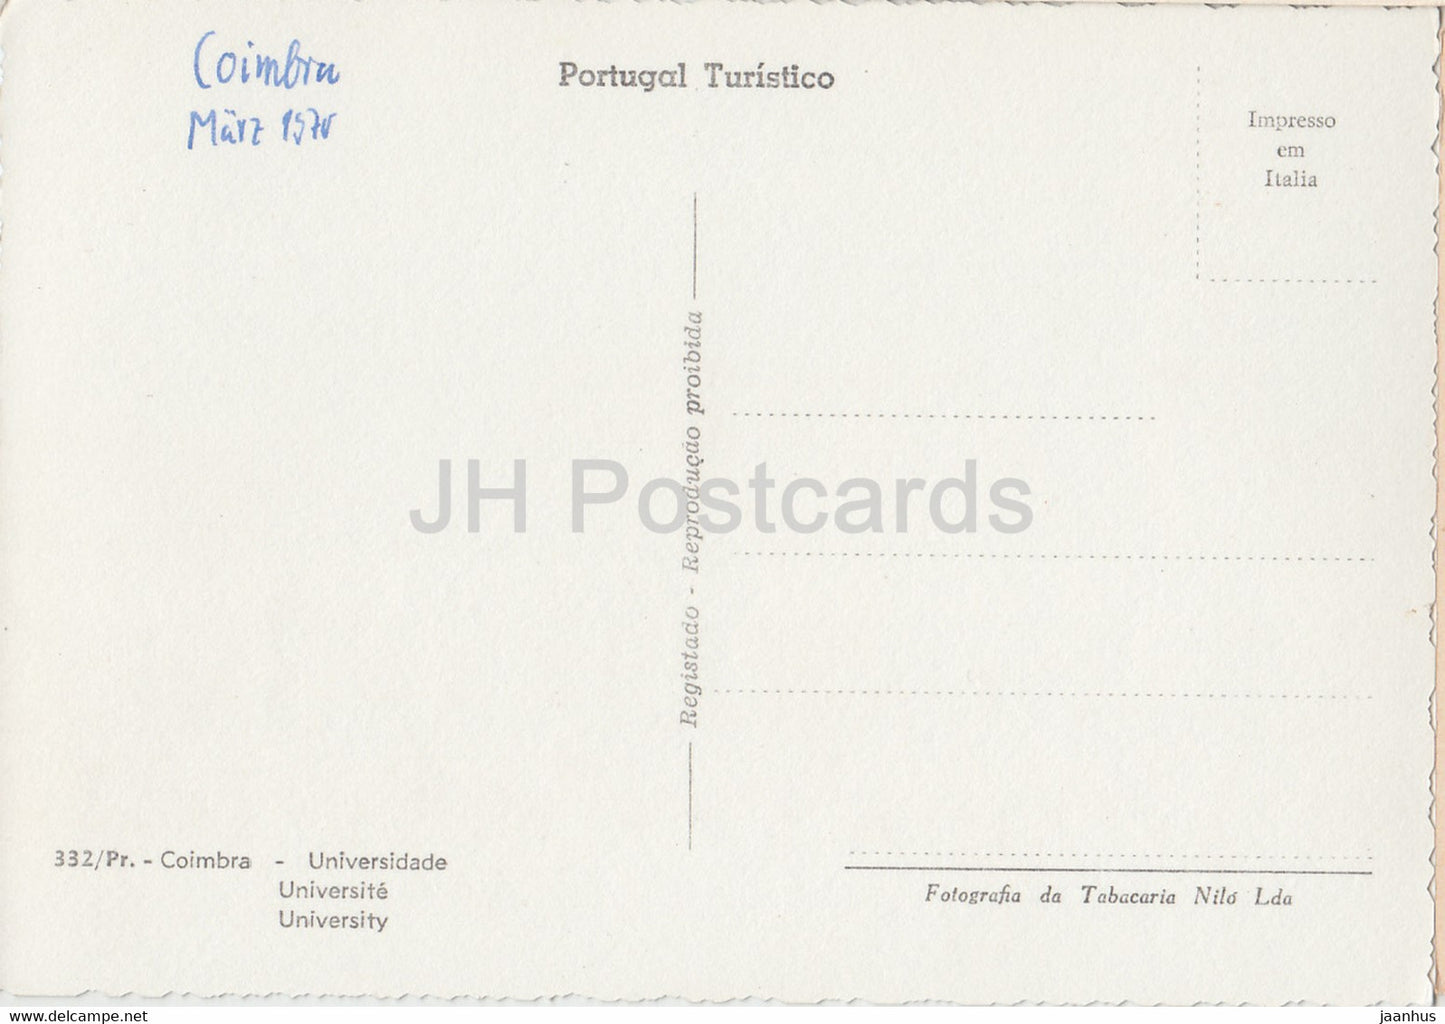 Coimbra - Universidade - Université - 1970 - Portugal - occasion